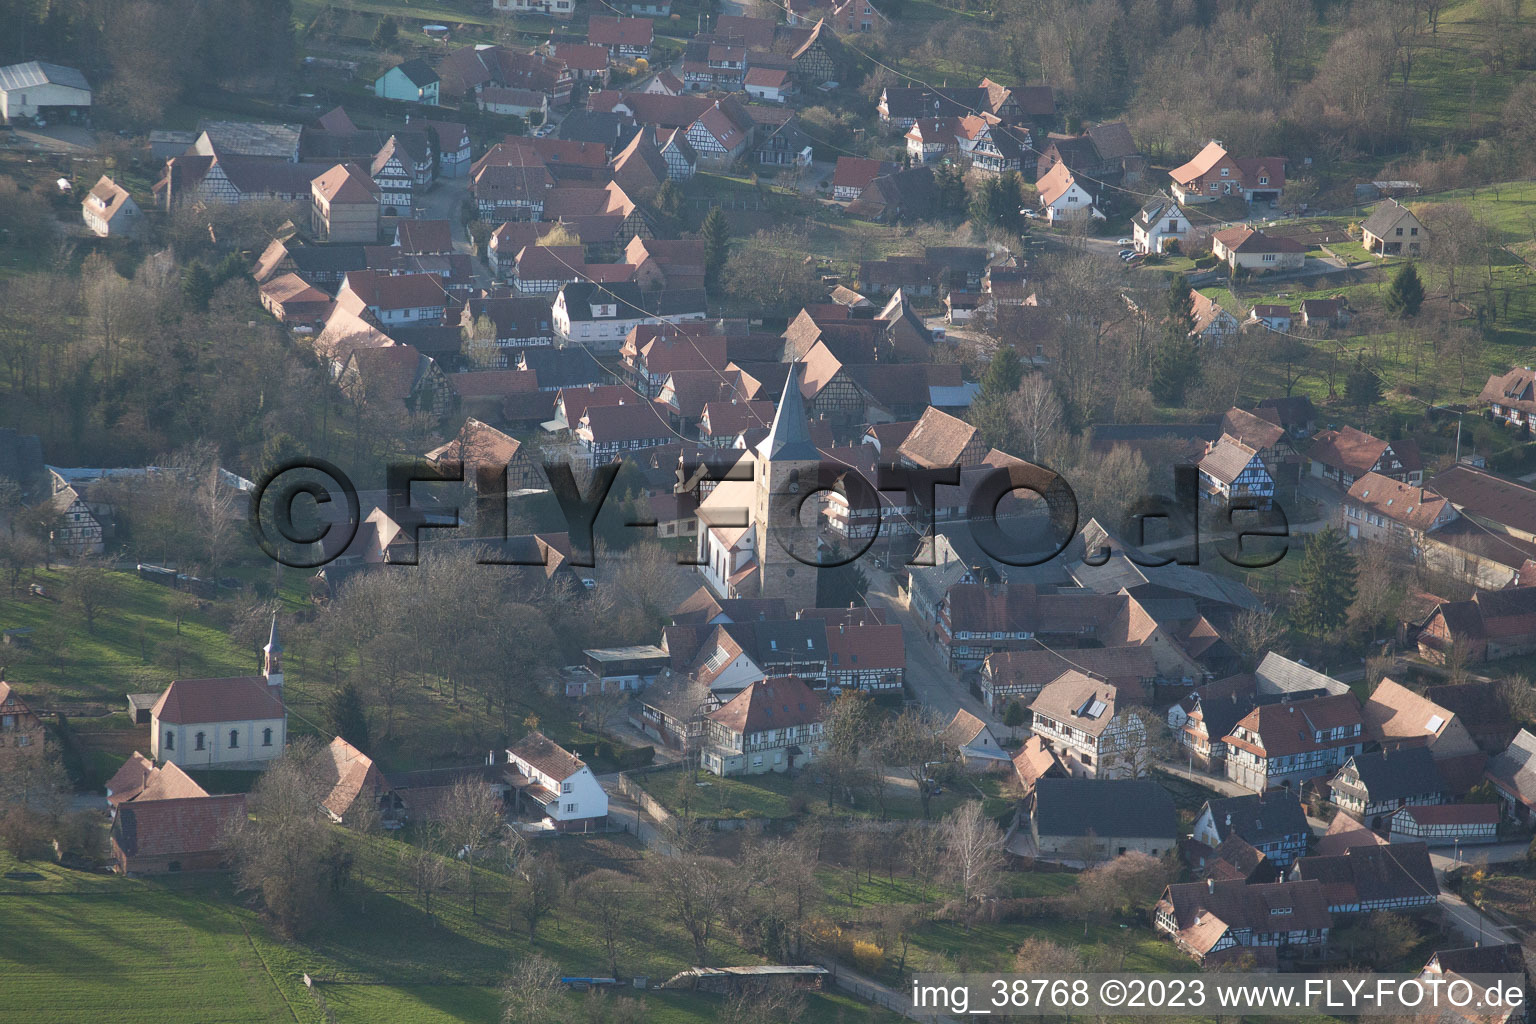 Luftbild von Drachenbronn-Birlenbach im Bundesland Bas-Rhin, Frankreich